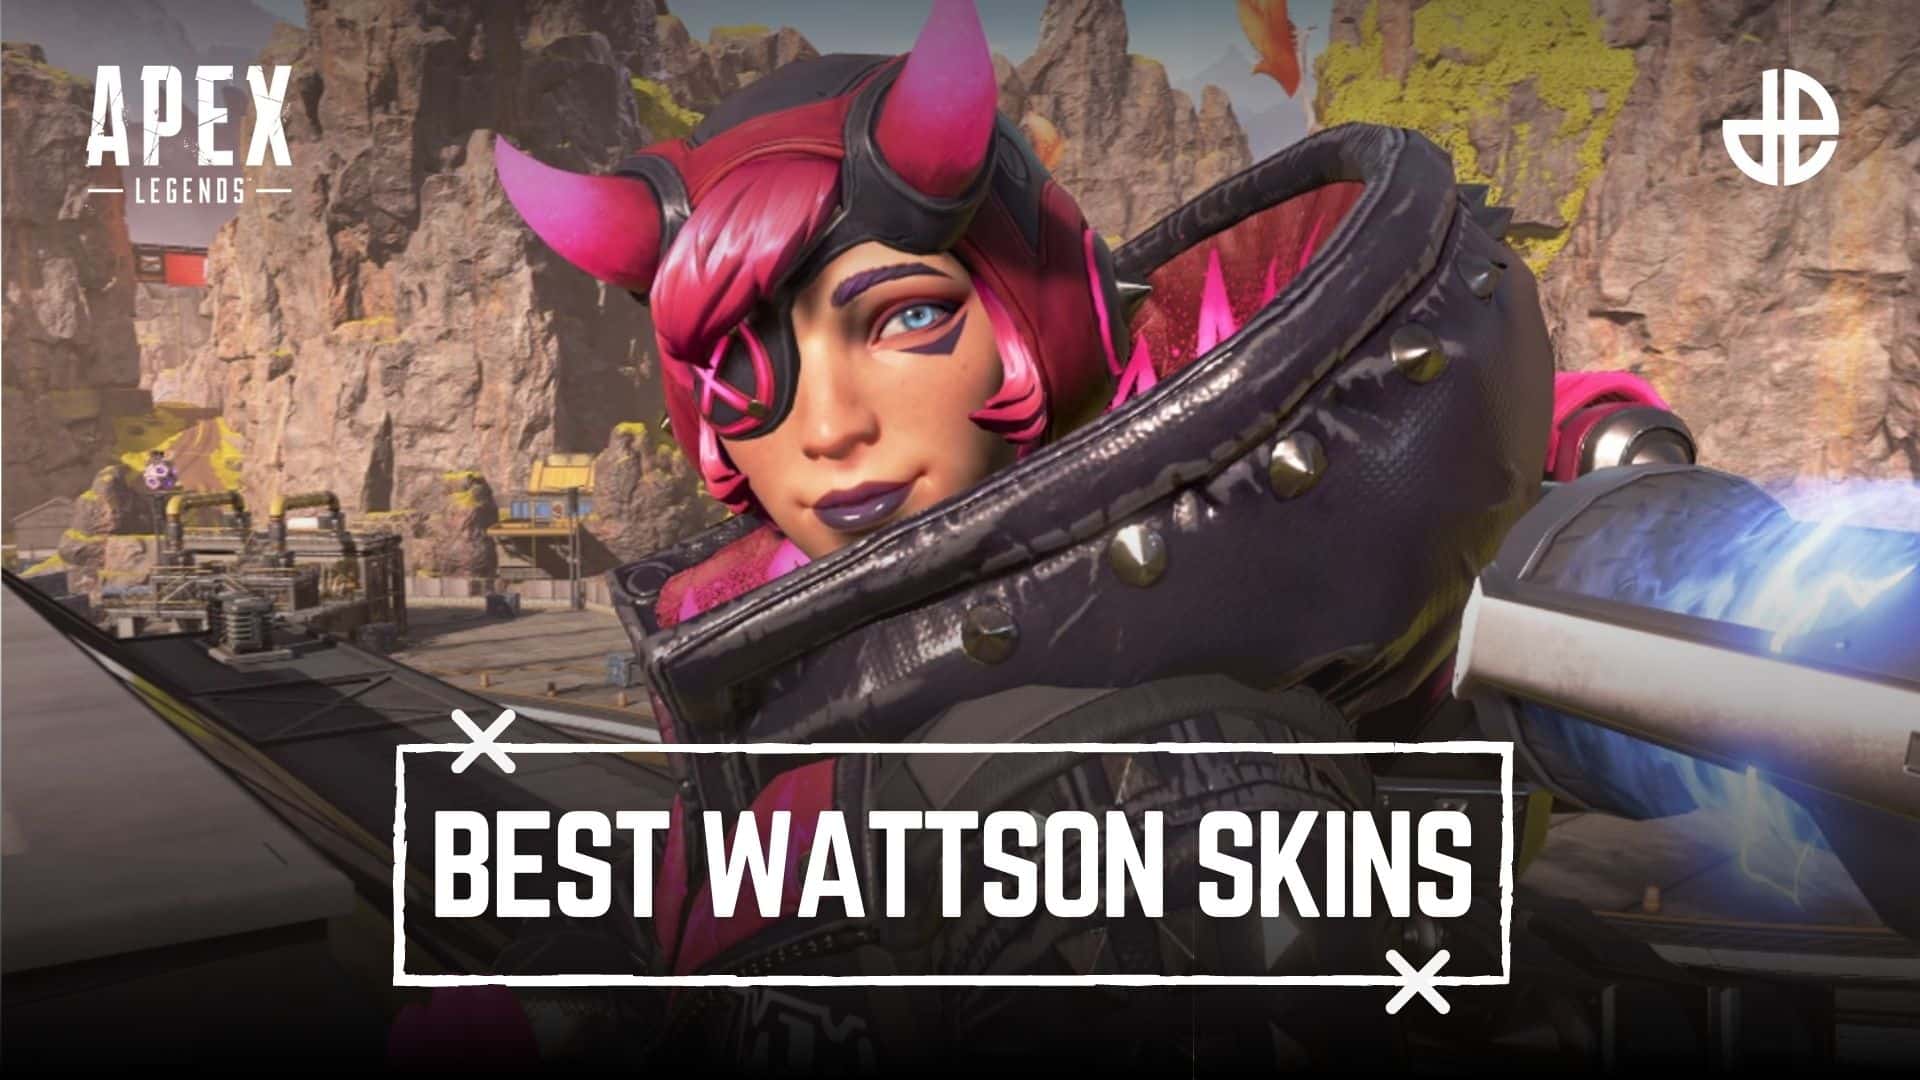 Best Wattson skins Apex Legends